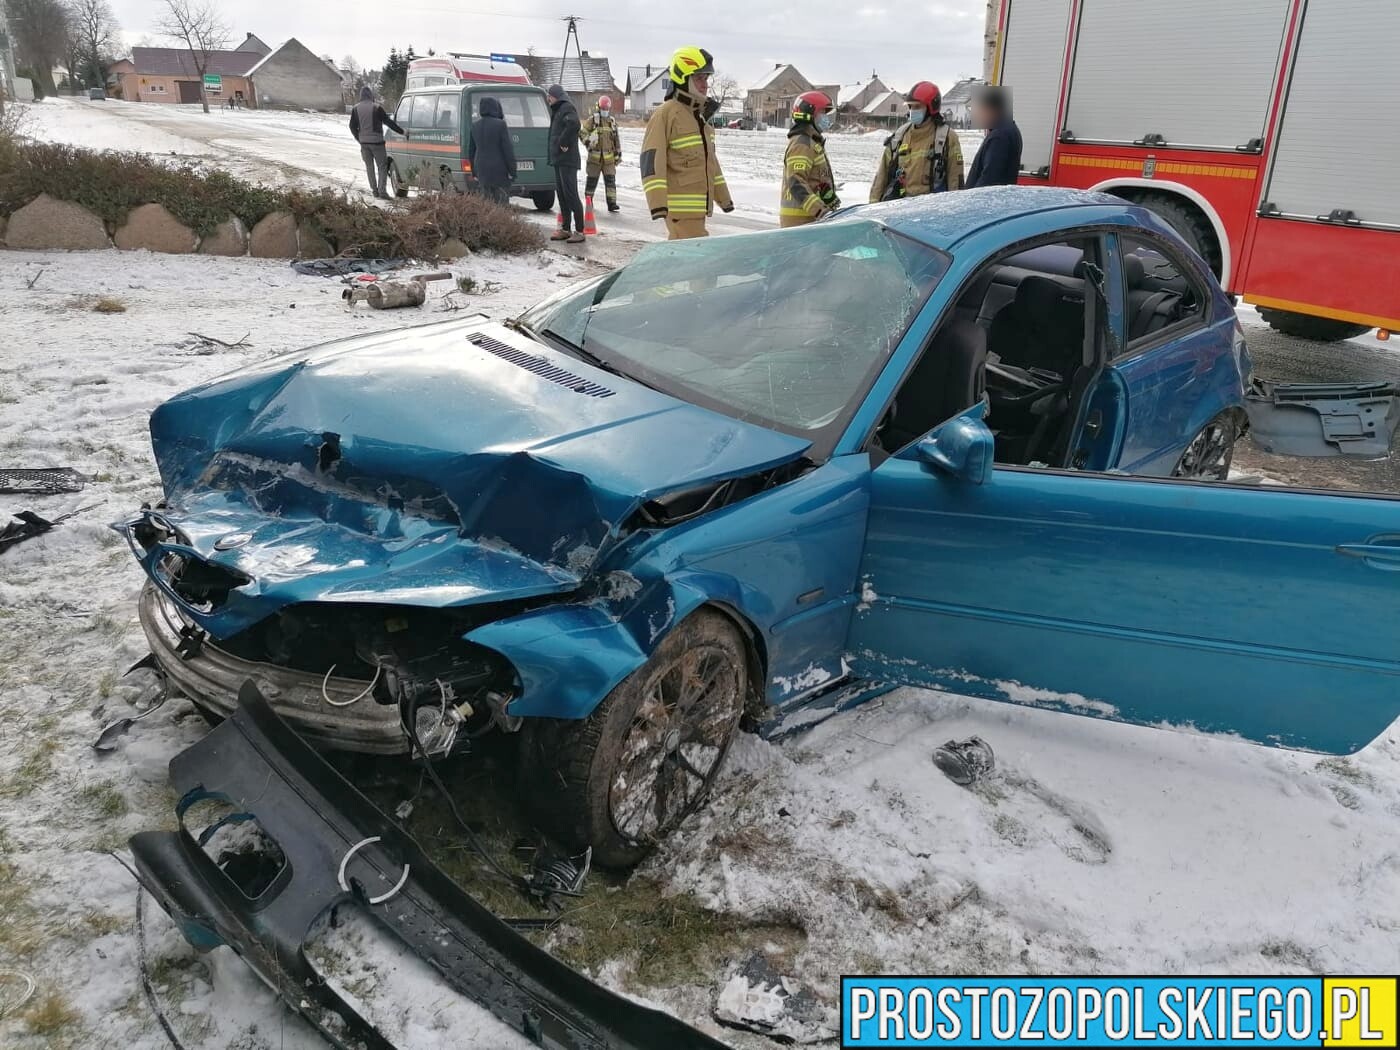 Dachowanie bmw w miejscowości Kórnica(powiat Krapkowicki).Kierowca z obrażeniami ciała został zabrany do szpitala.